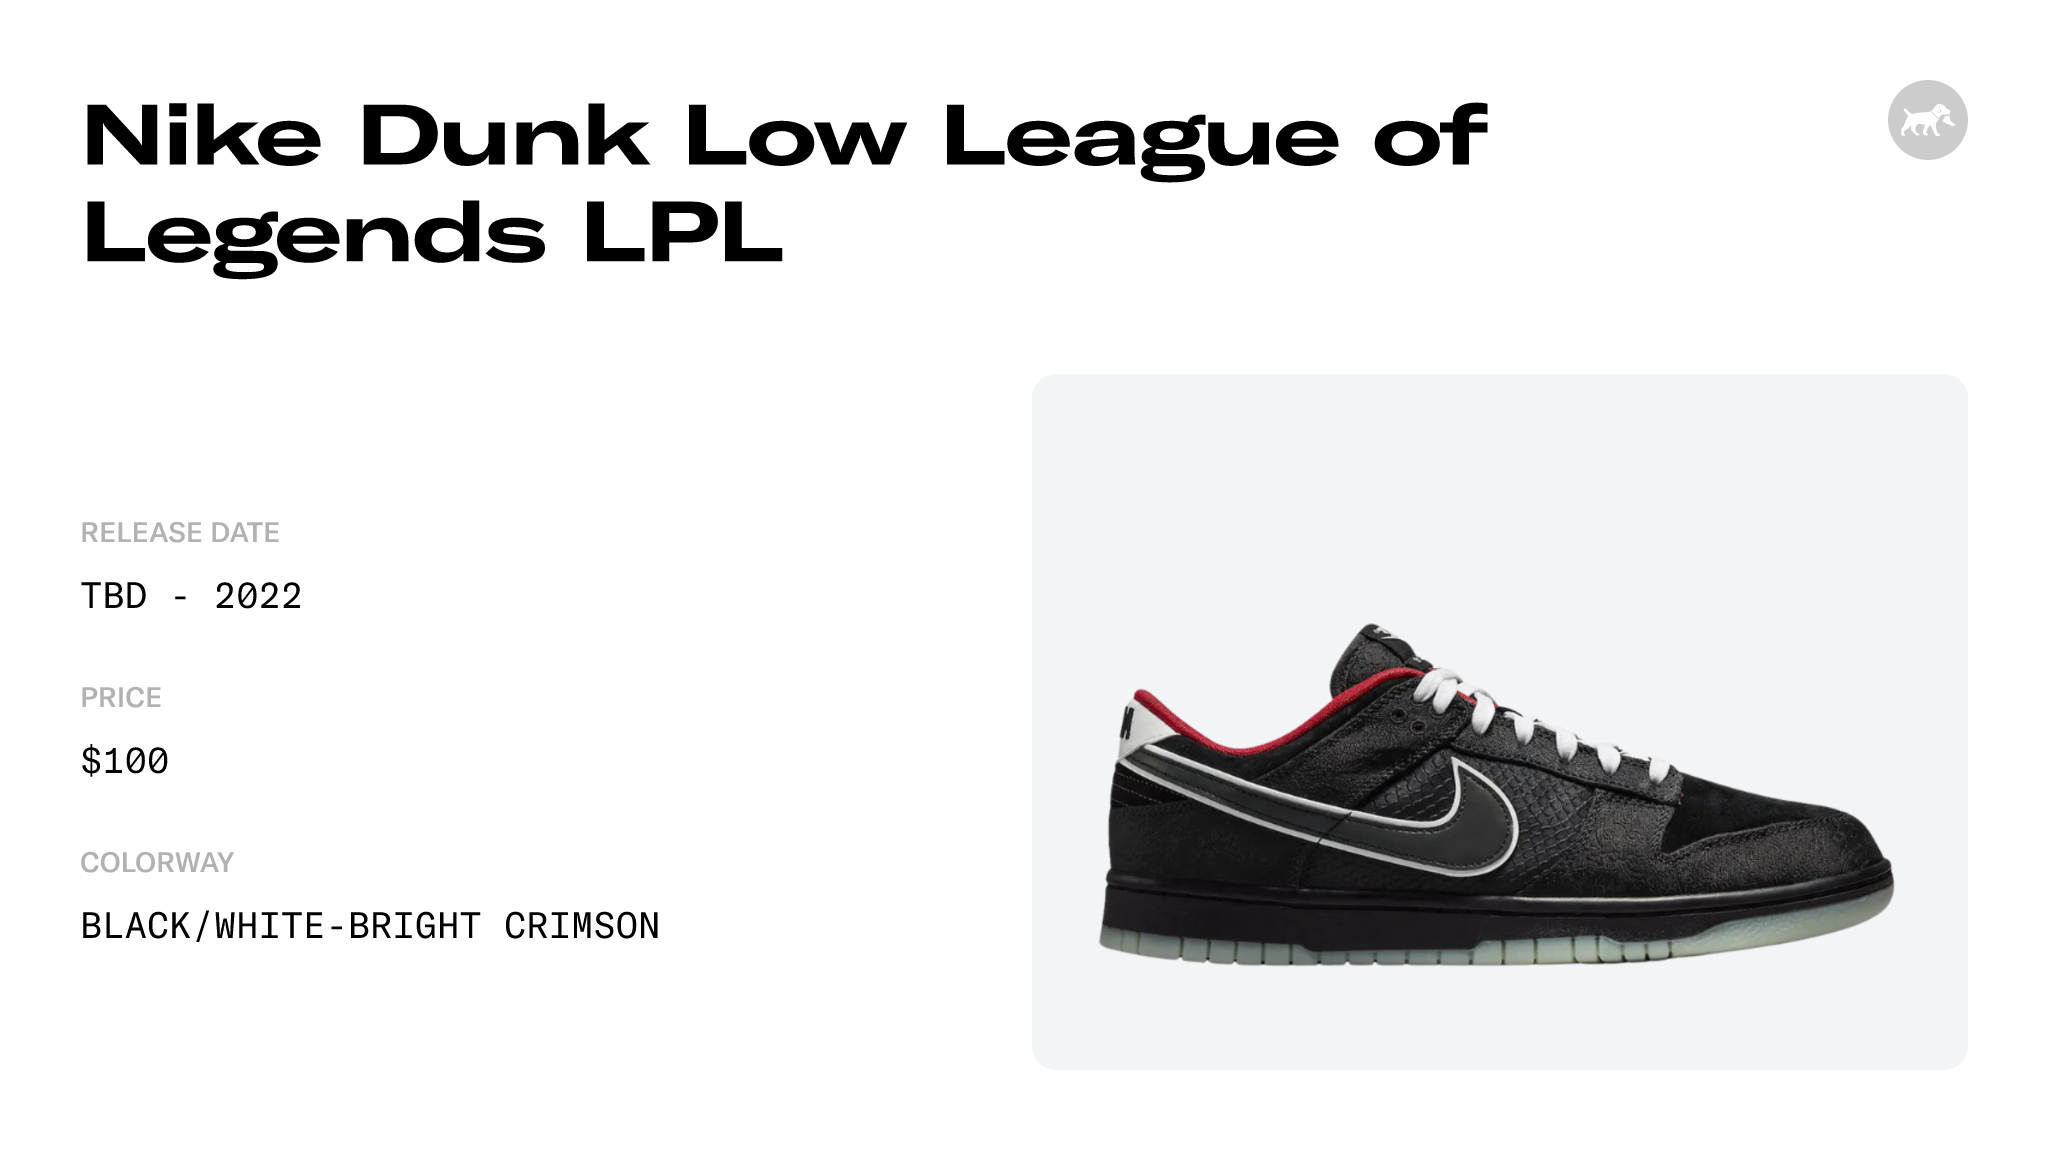 League of Legends LPL x Nike Dunk Low